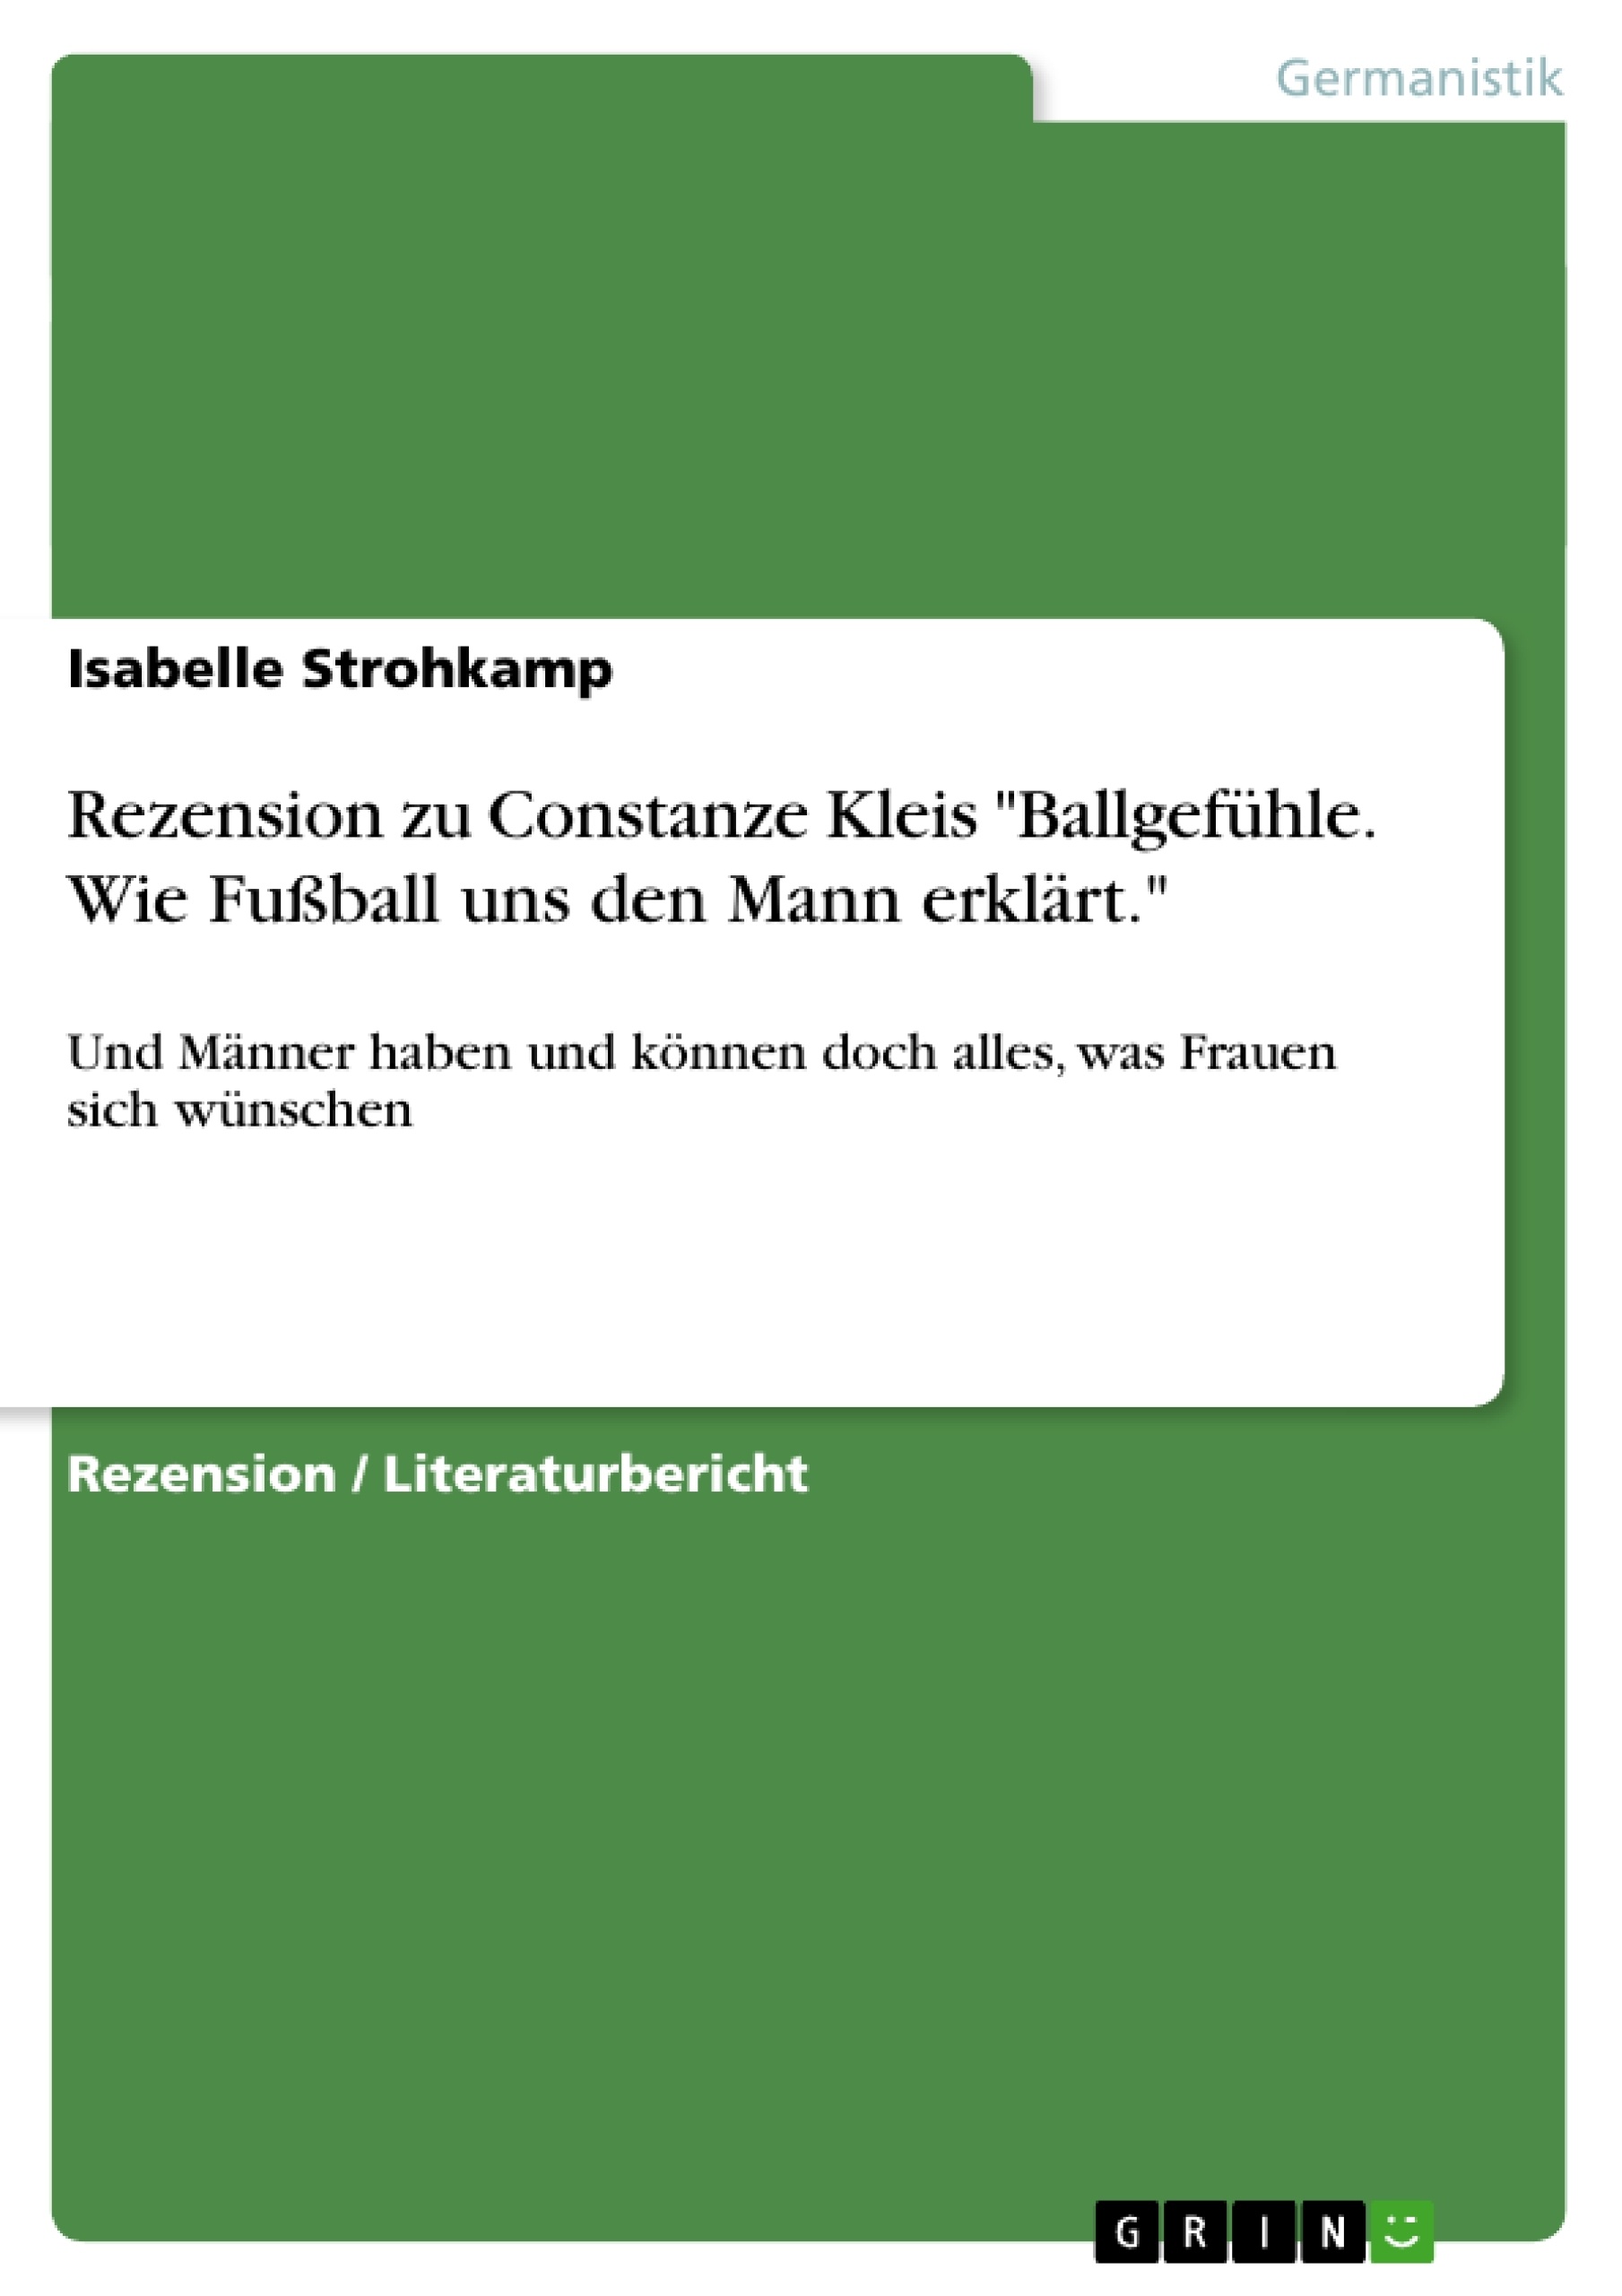 Titre: Rezension zu Constanze Kleis "Ballgefühle. Wie Fußball uns den Mann erklärt."